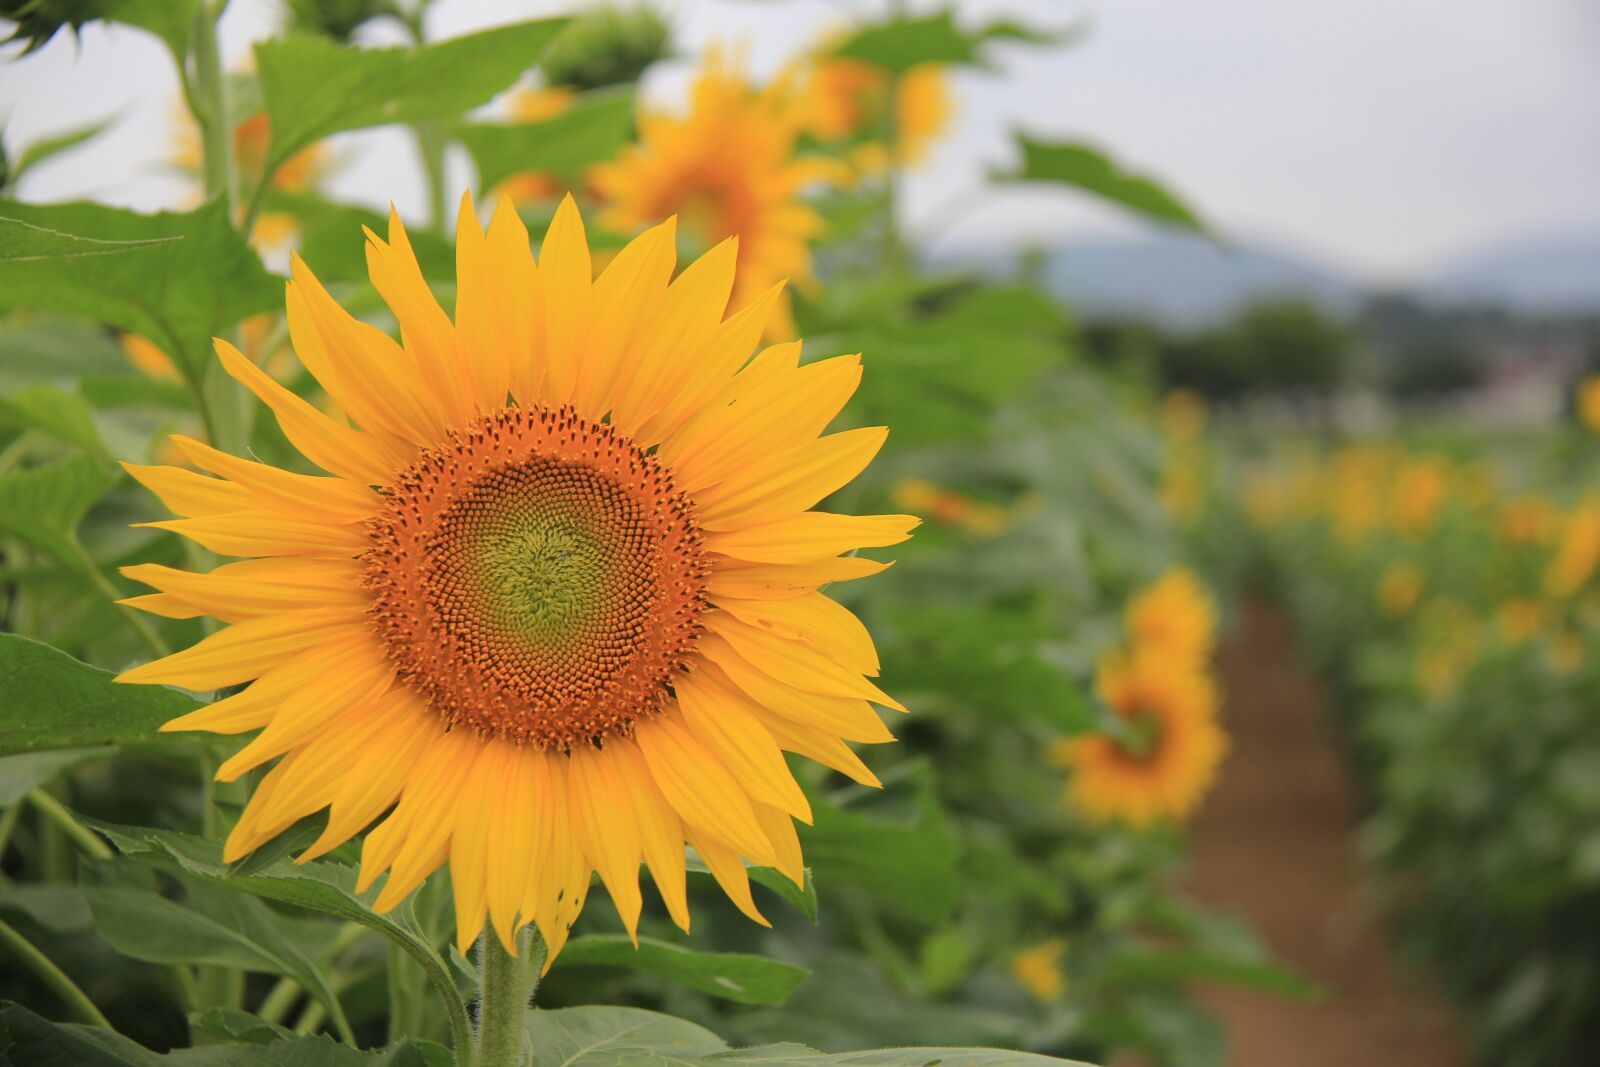 Canon EOS 60D sample photo. Sunflower, farm, summer photography